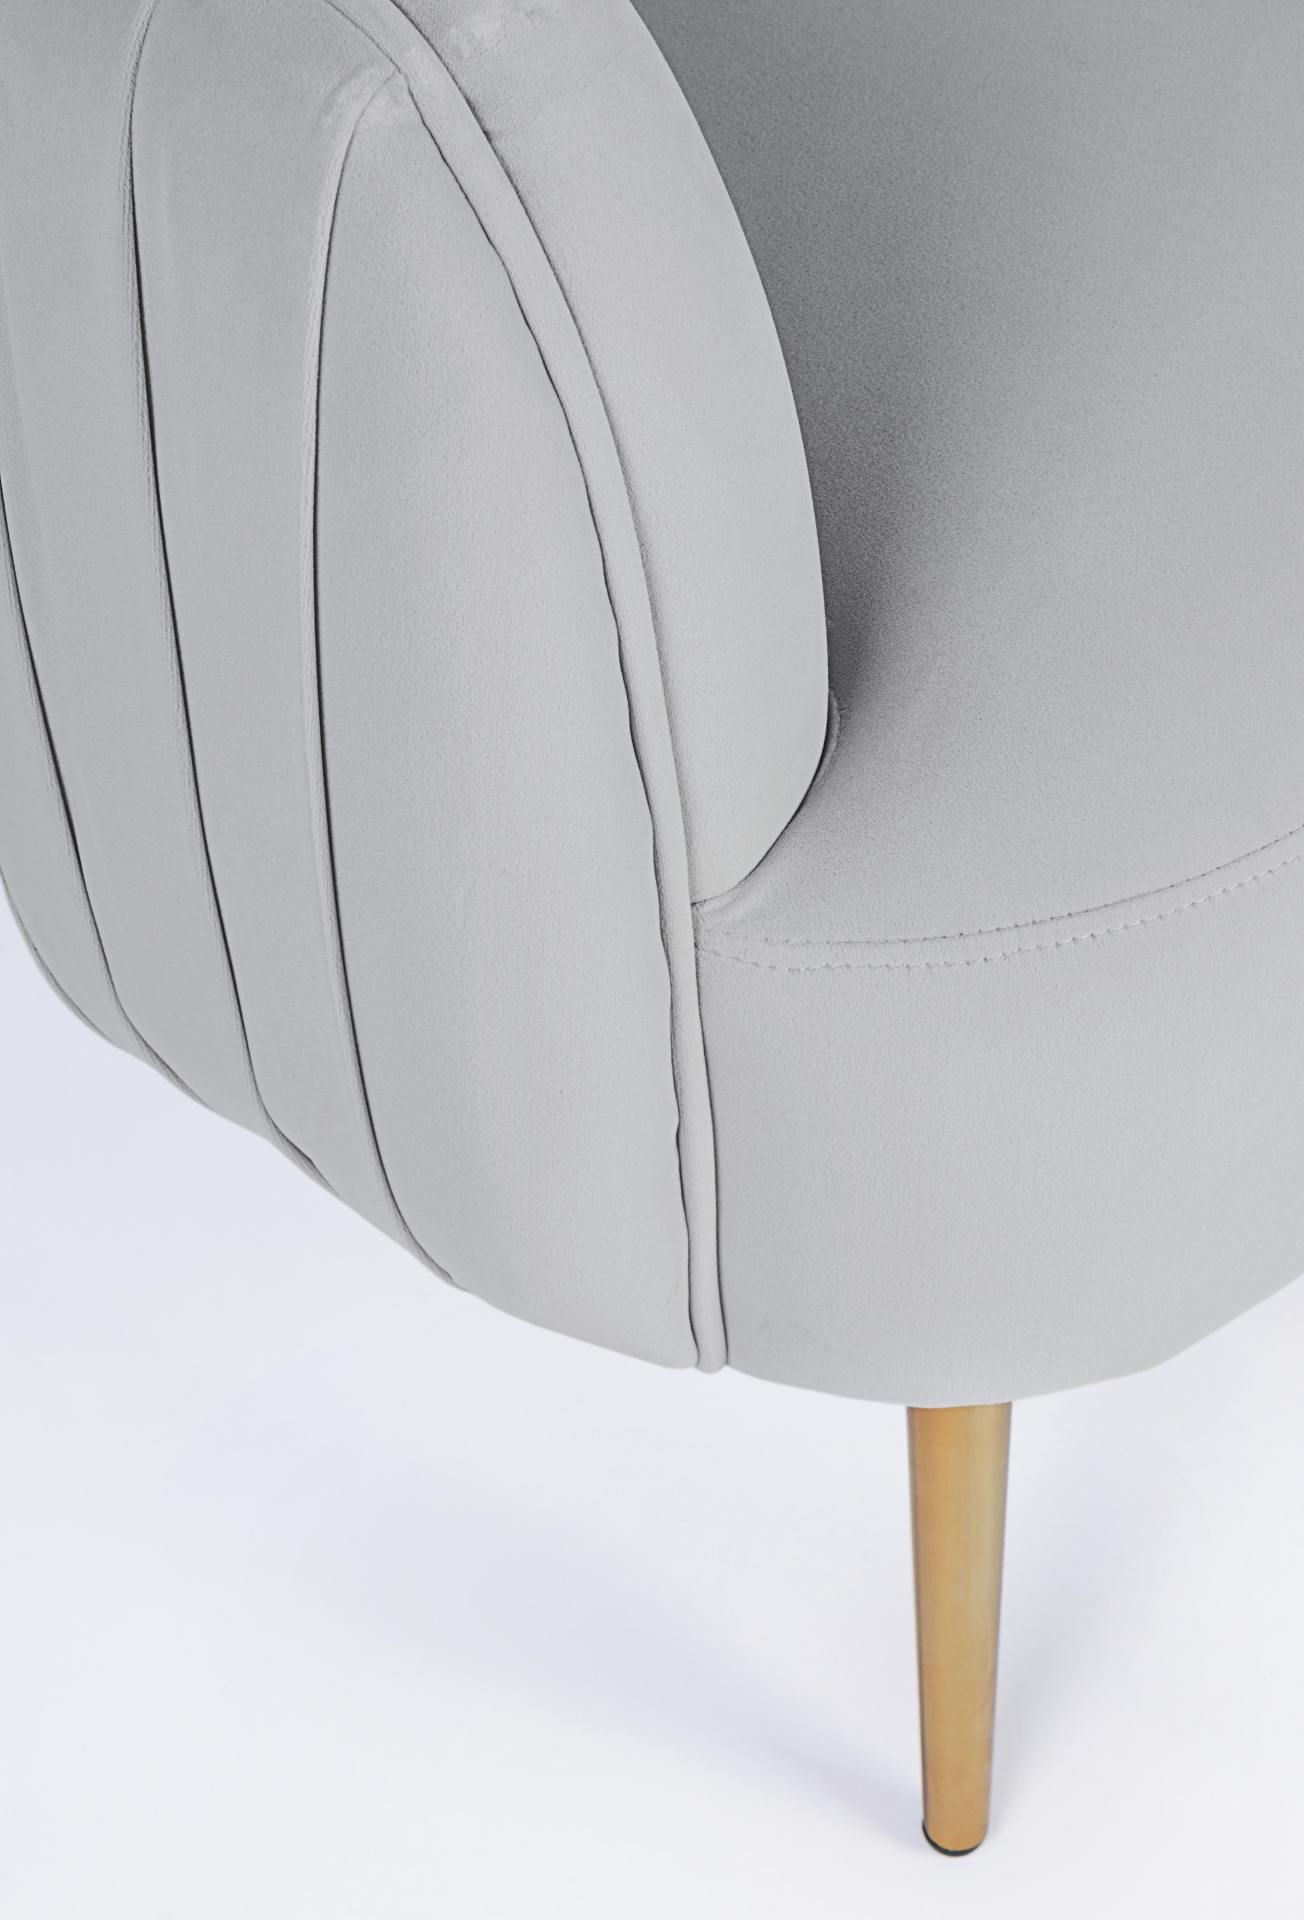 Der Sessel Linsey überzeugt mit seinem modernen Design. Gefertigt wurde er aus Stoff in Samt-Optik, welcher einen hellgrauen Farbton besitzt. Das Gestell ist aus Metall und hat eine goldene Farbe. Der Sessel besitzt eine Sitzhöhe von 45 cm. Die Breite bet